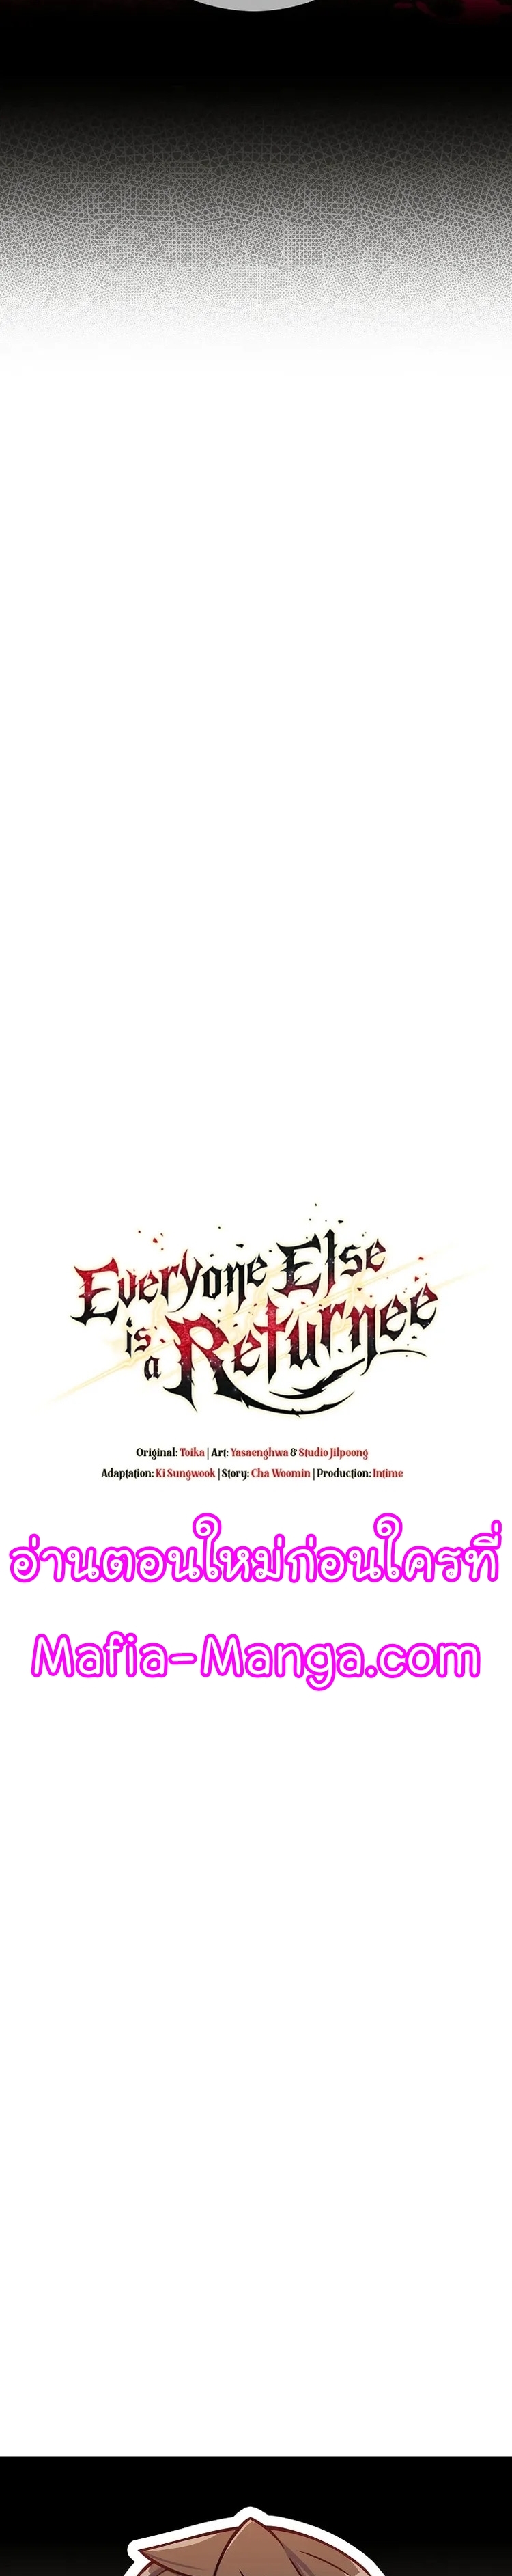 Everyone Else Is a Returnee 15 05